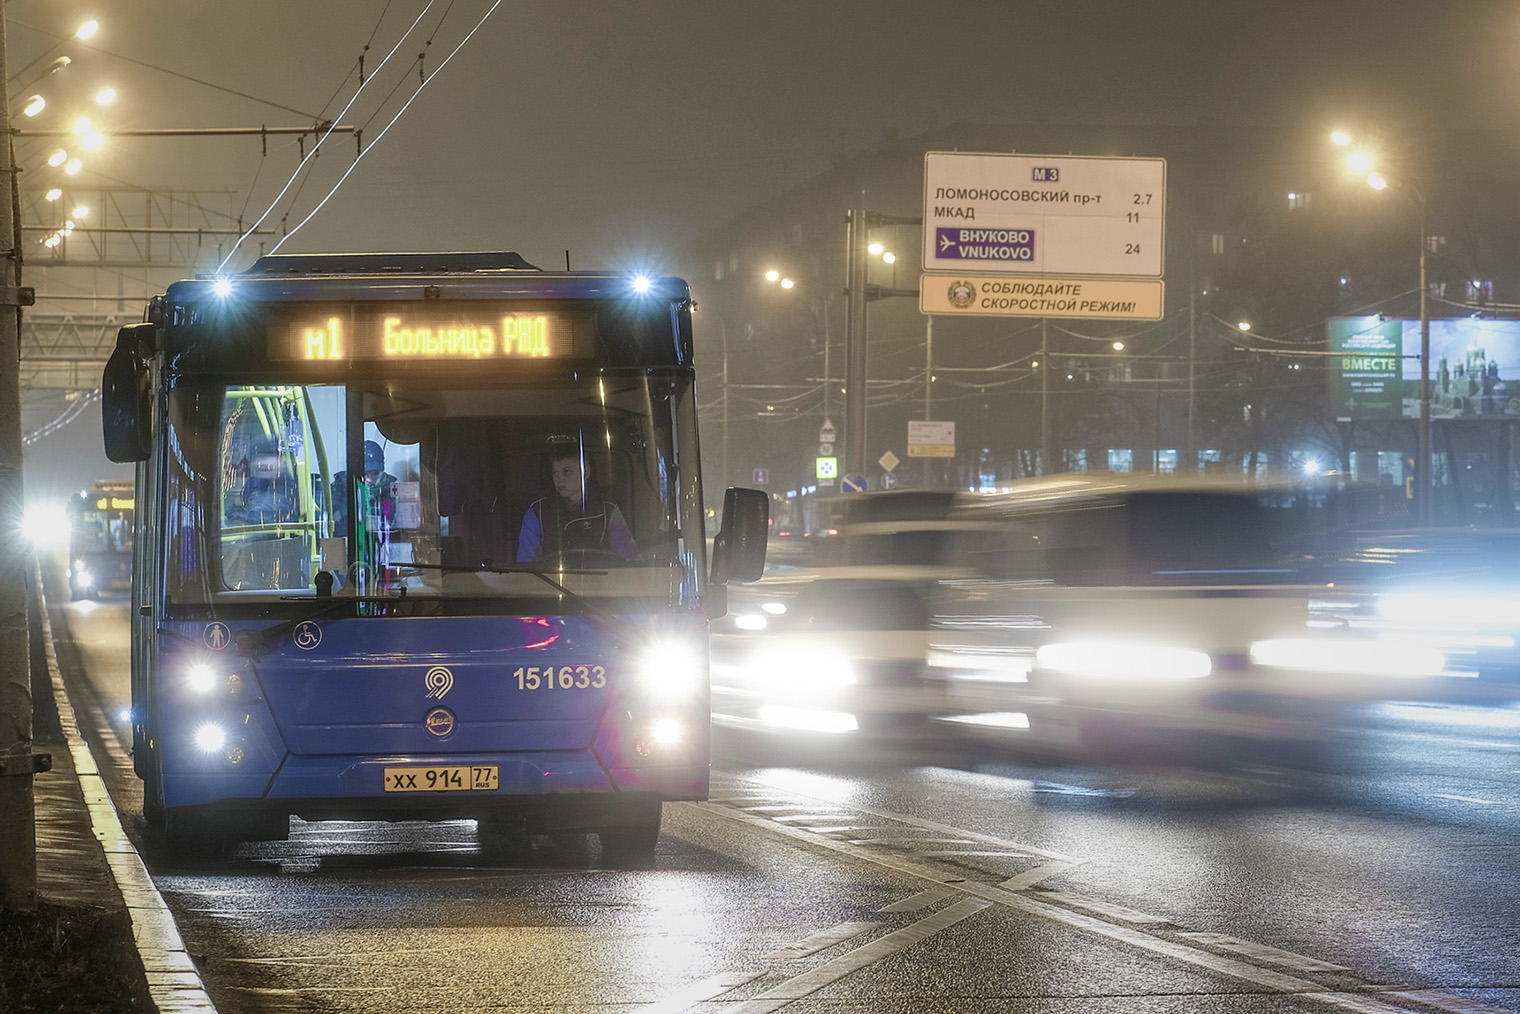 Ночью обычно нет пробок, поэтому автобус едет быстро. Фотография: Vereshchagin Dmitry / Shutterstock / FOTODOM